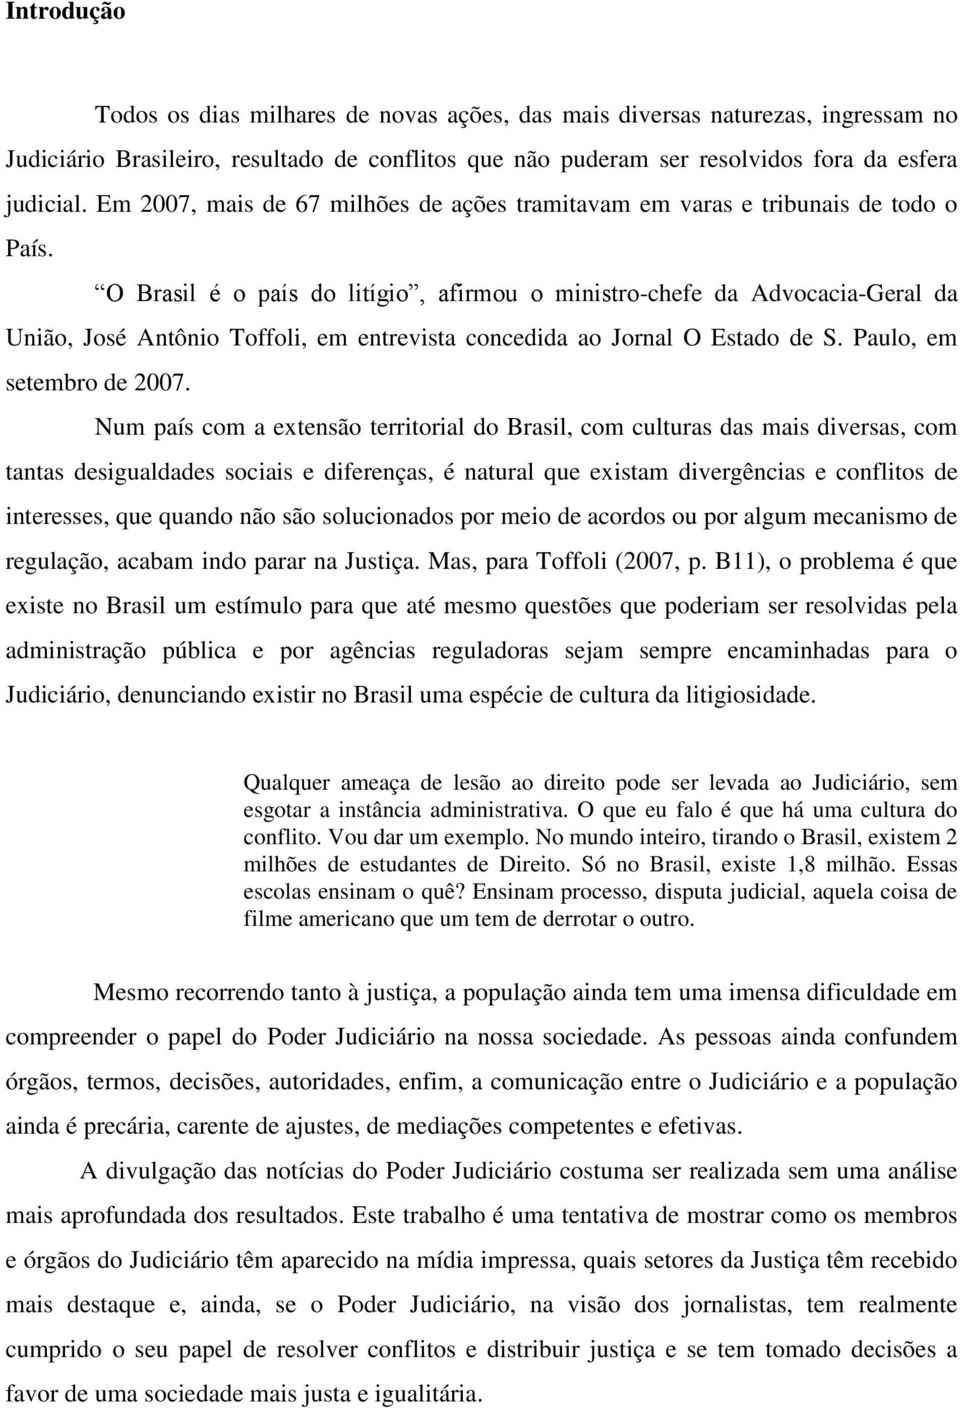 O Brasil é o país do litígio, afirmou o ministro-chefe da Advocacia-Geral da União, José Antônio Toffoli, em entrevista concedida ao Jornal O Estado de S. Paulo, em setembro de 2007.